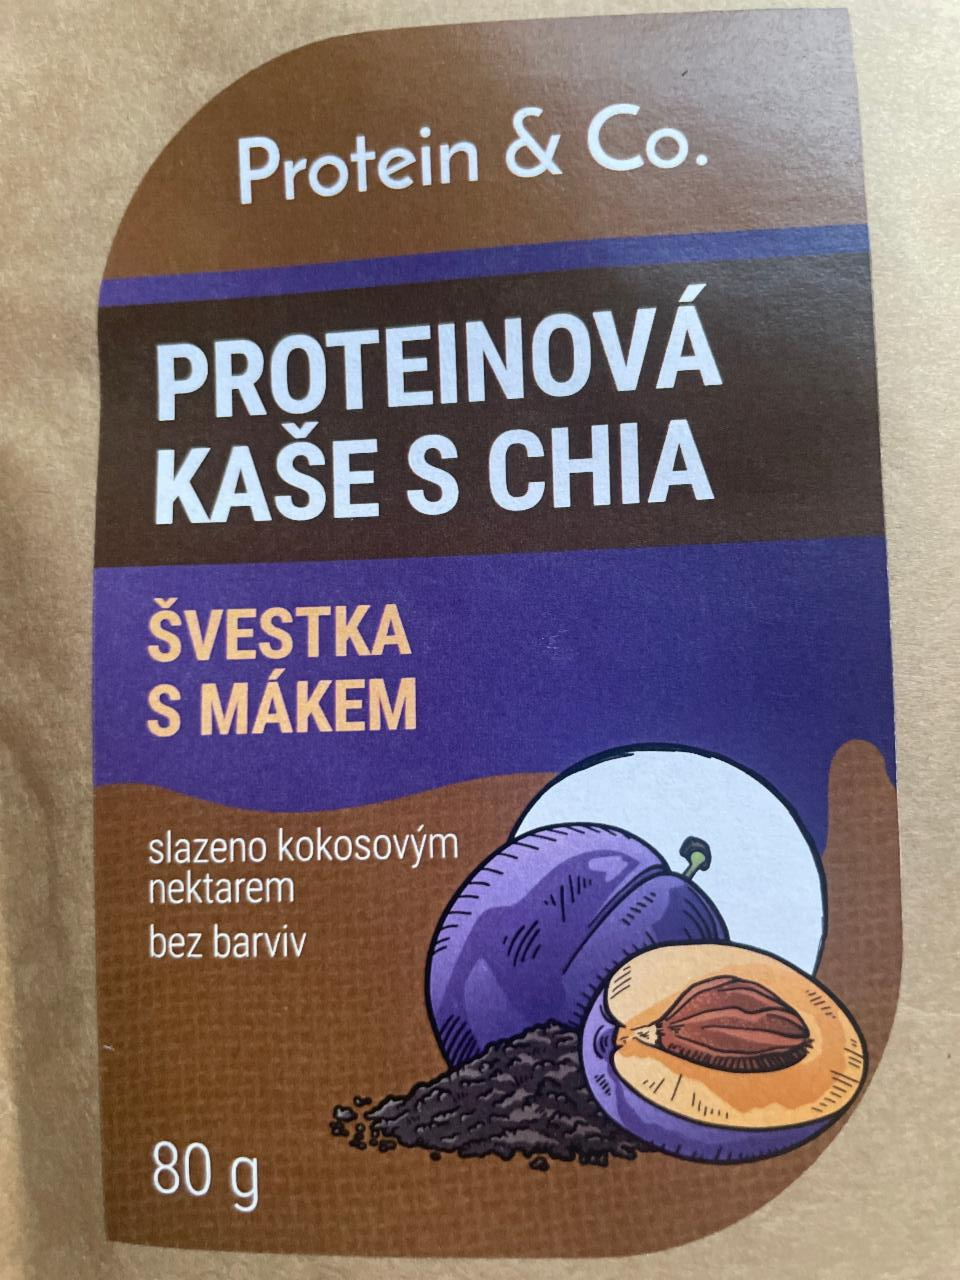 Fotografie - Proteinová Kaše s chia Švestka s mákem Protein & Co.